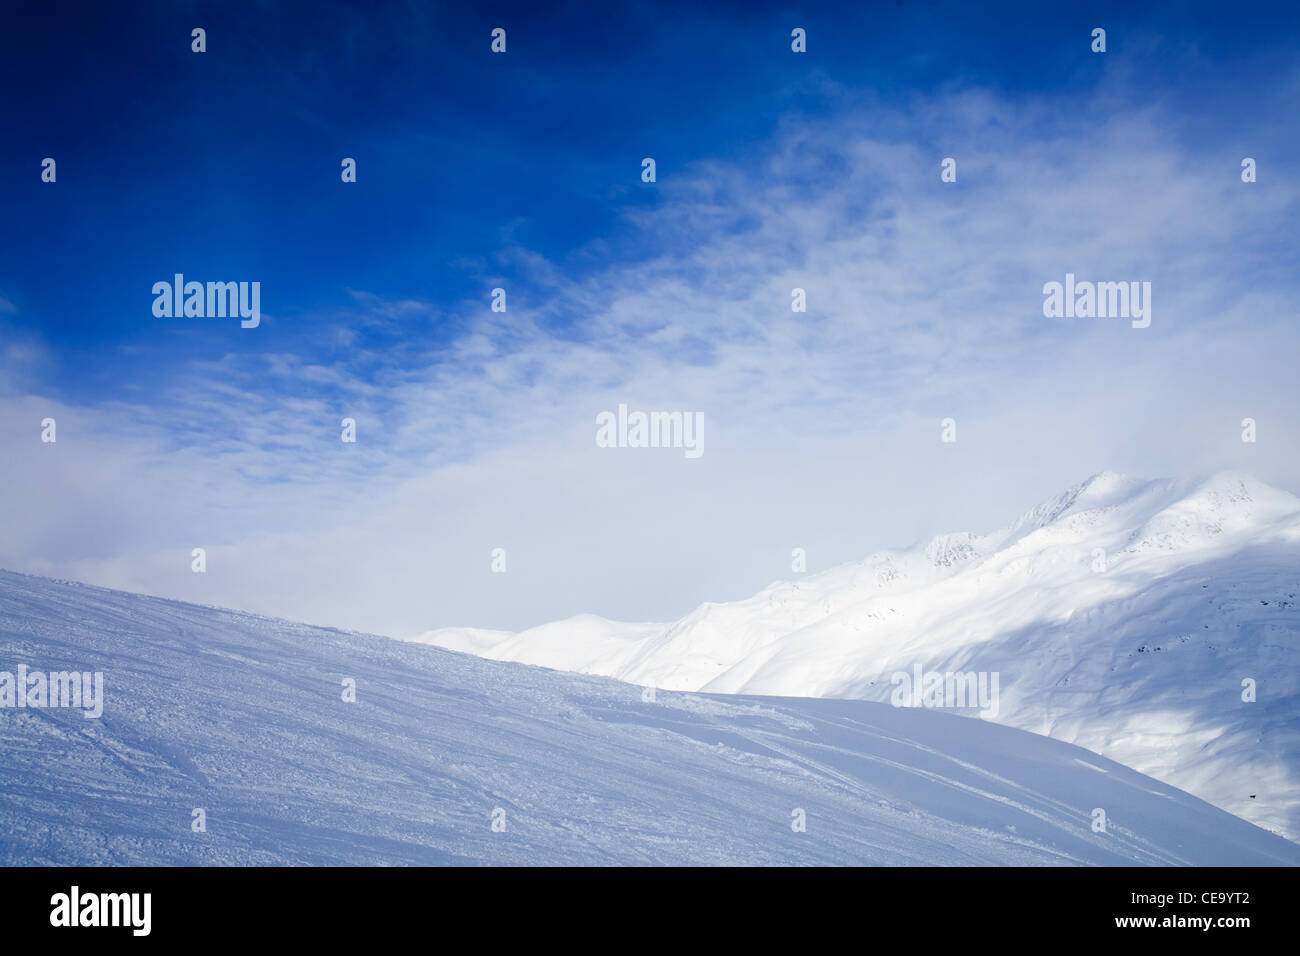 La vue sur les montagnes d'hiver, couverte de neige, pente de ski sur l'avant-plan Banque D'Images